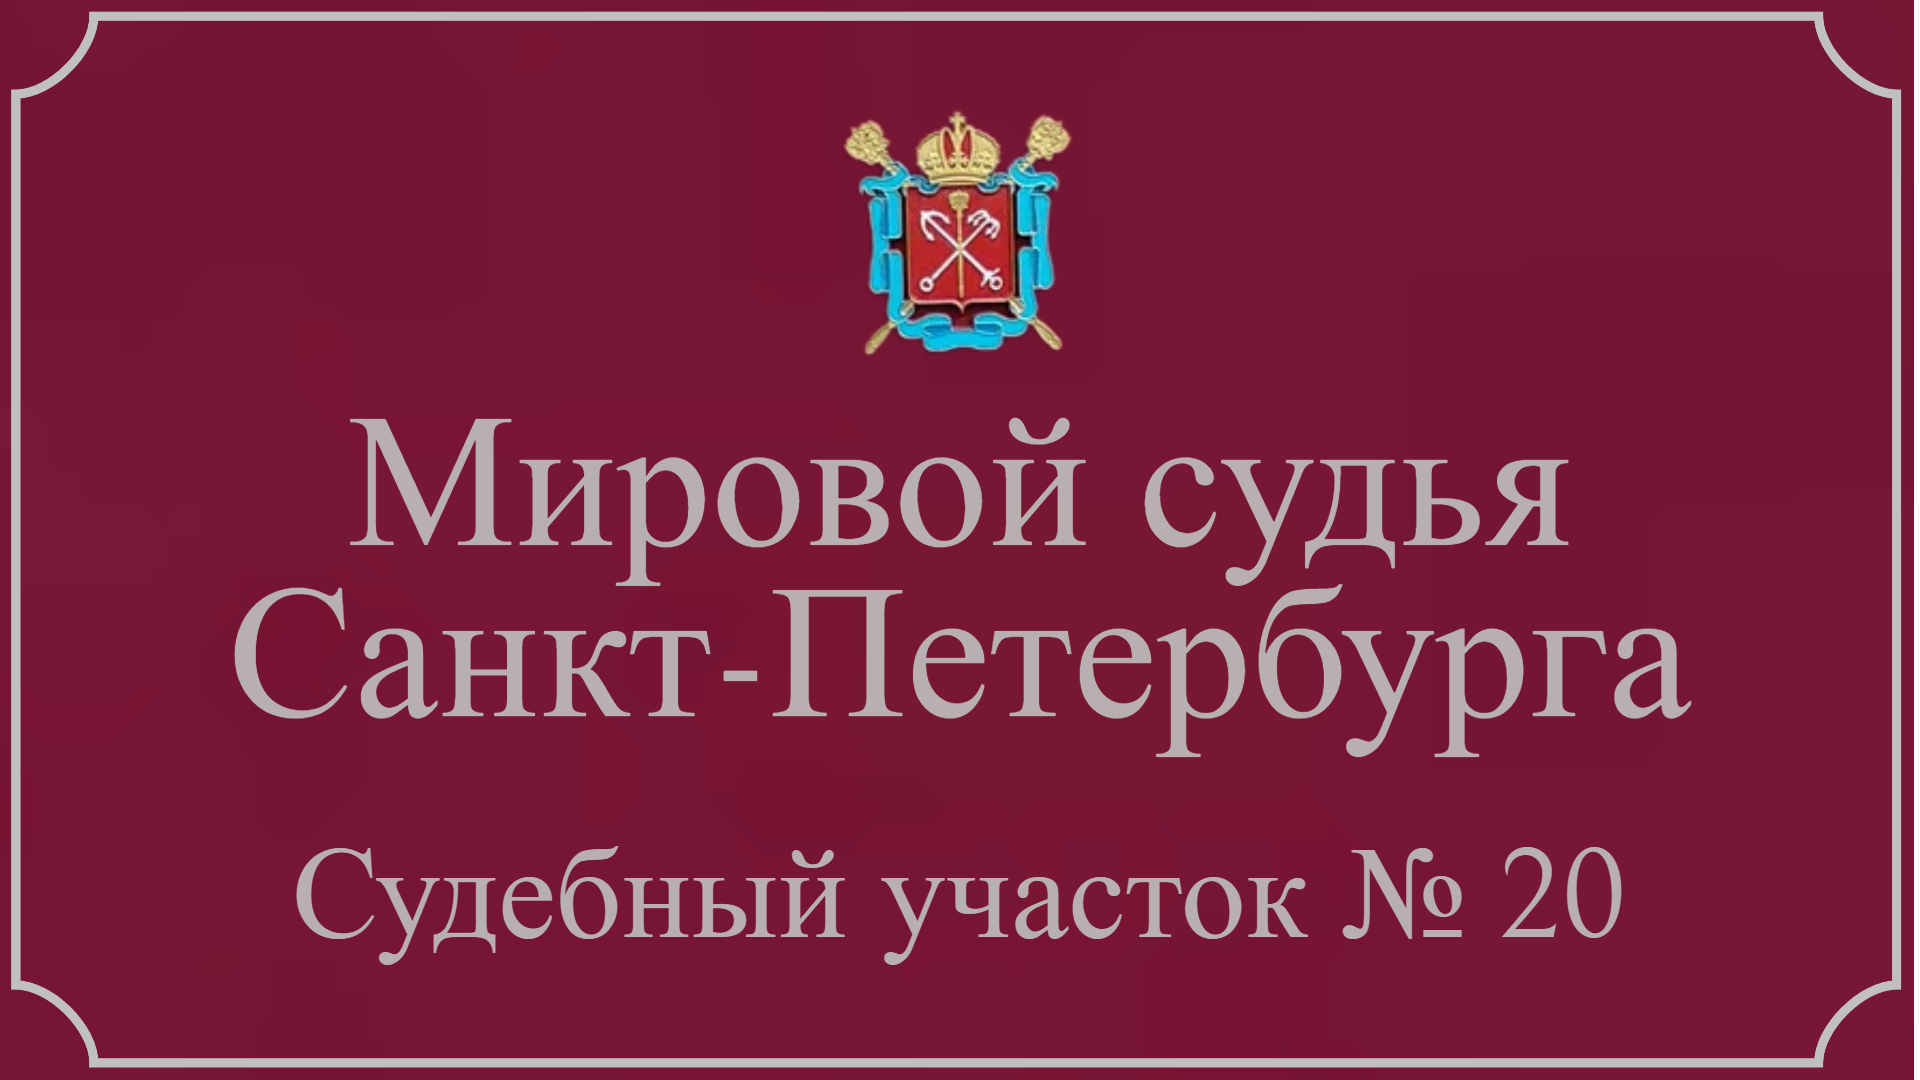 Информация по 20 судебному участку в Санкт-Петербурге.